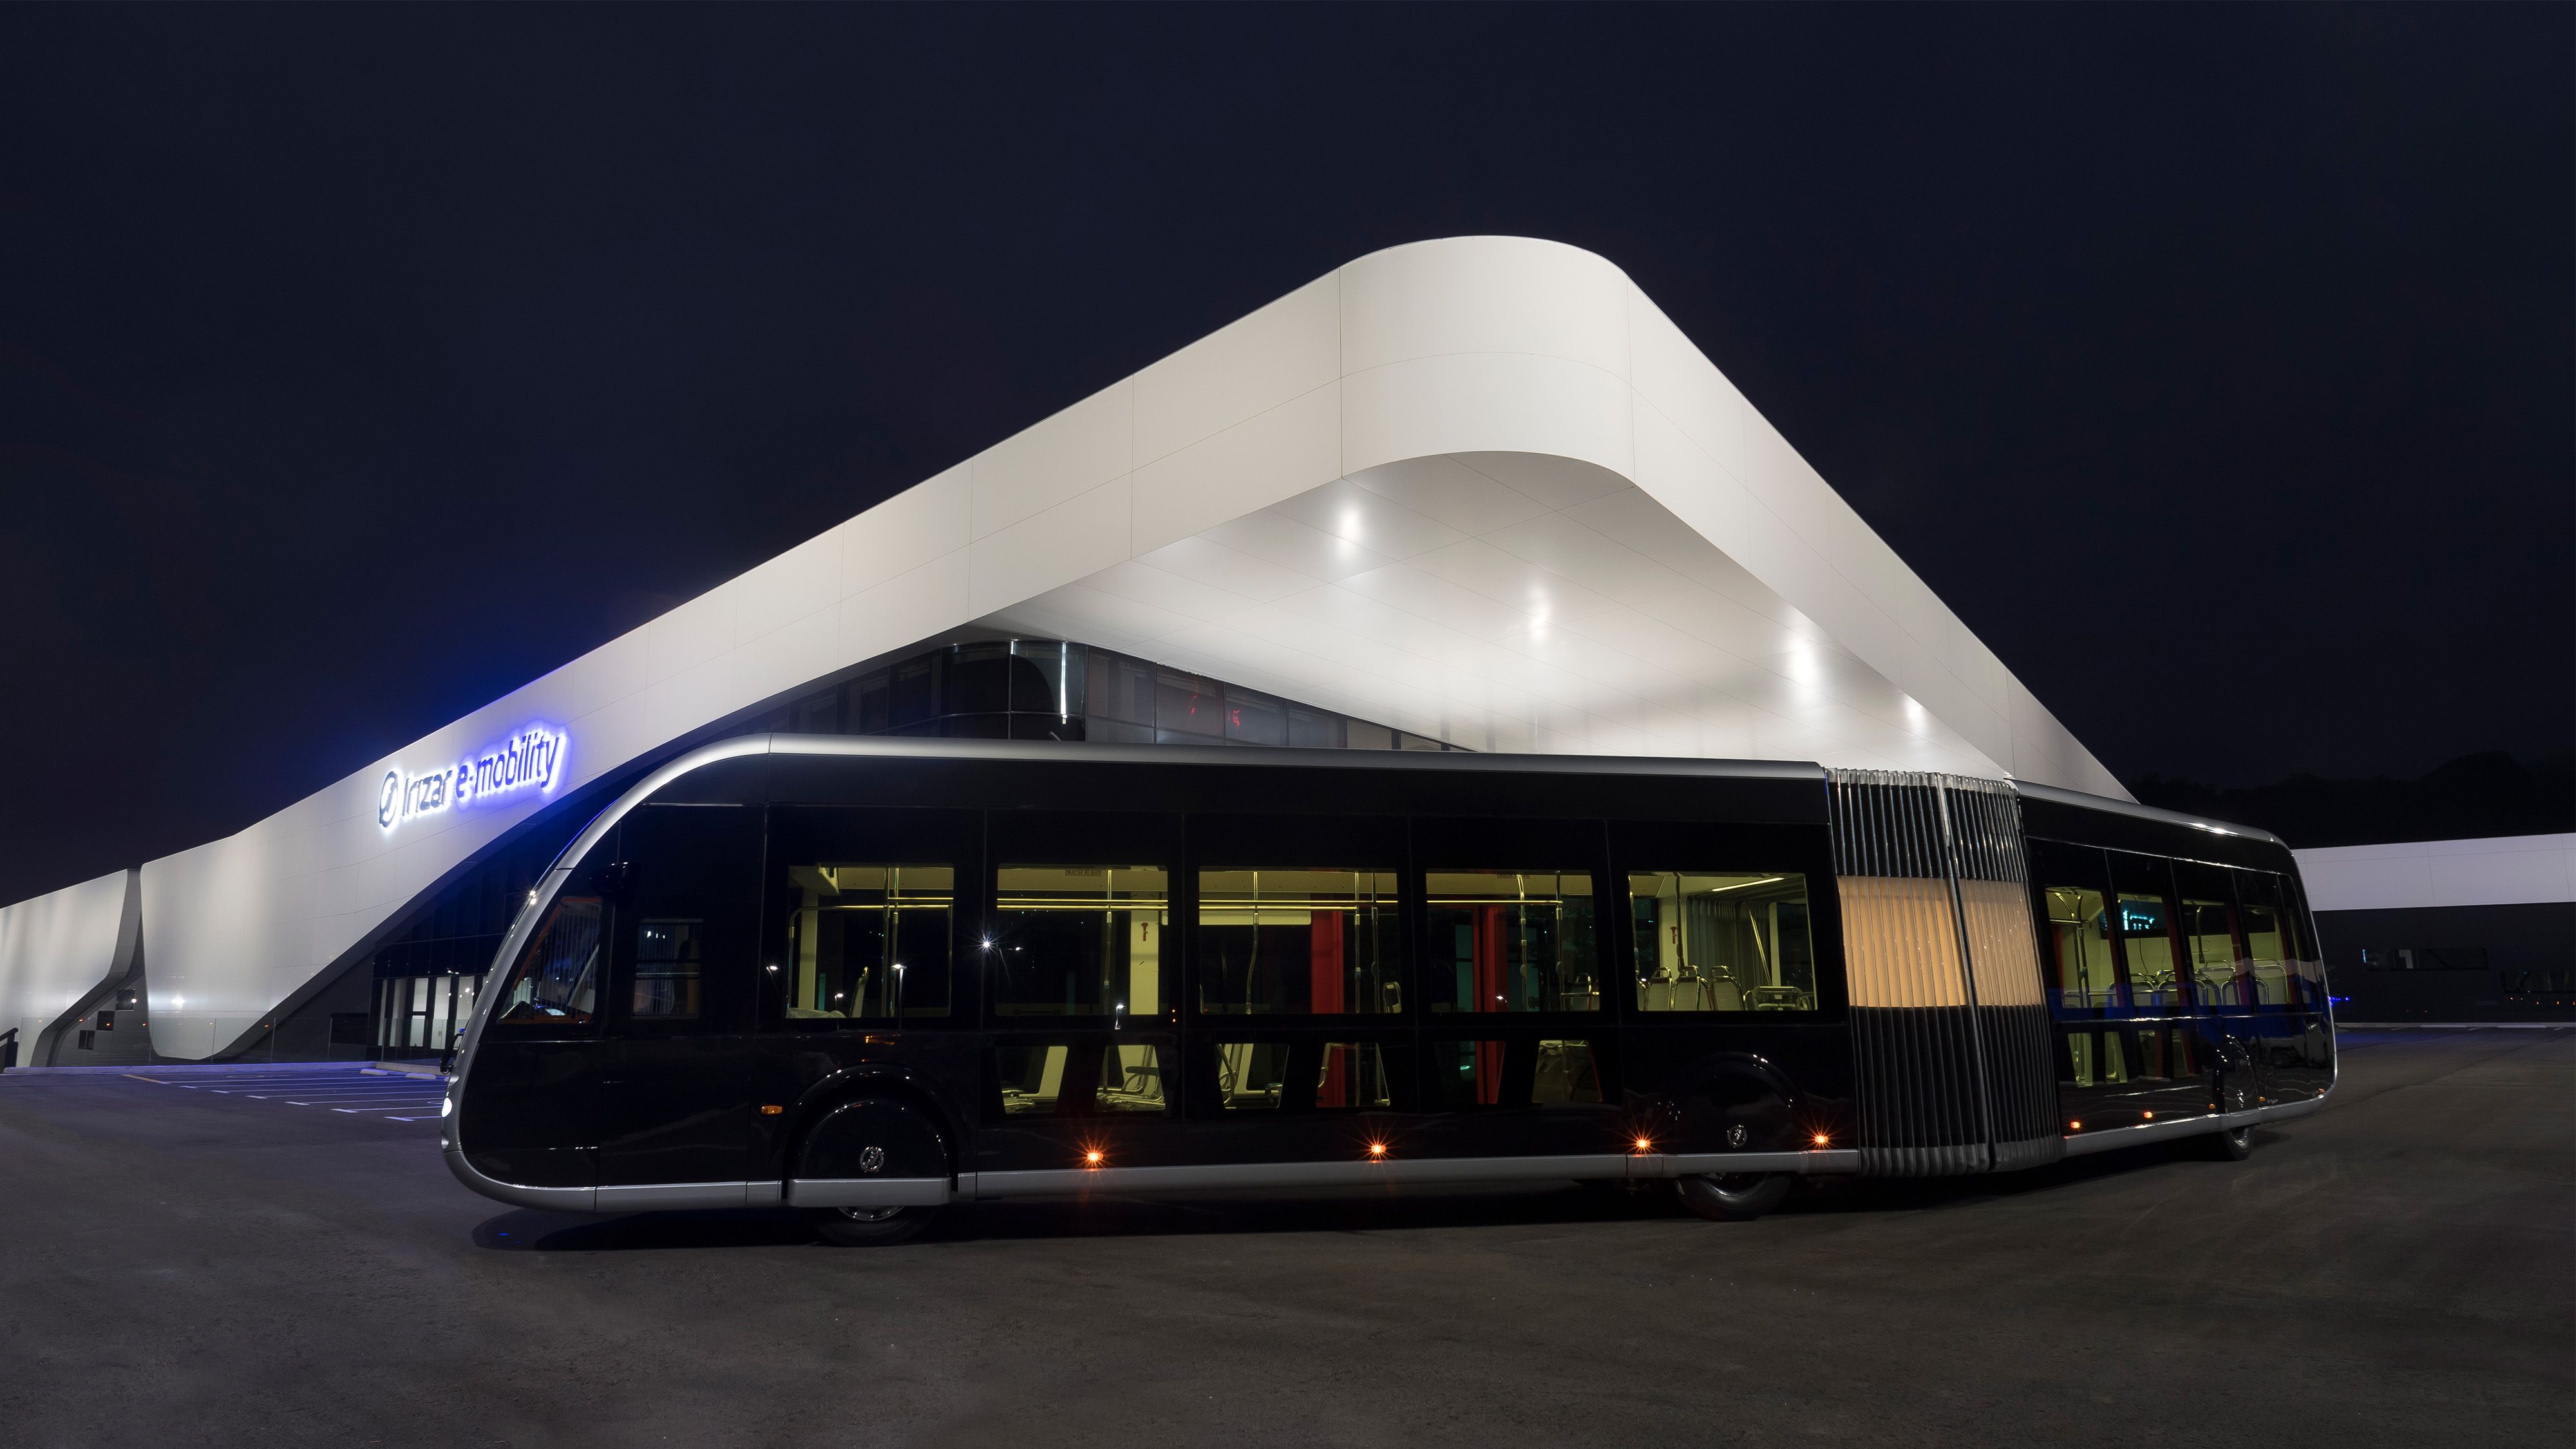 De Lijn sigla un accordo quadro per autobus elettrici per il trasporto pubblico e disporrà di veicoli 100% elettrici di Irizar e-mobility